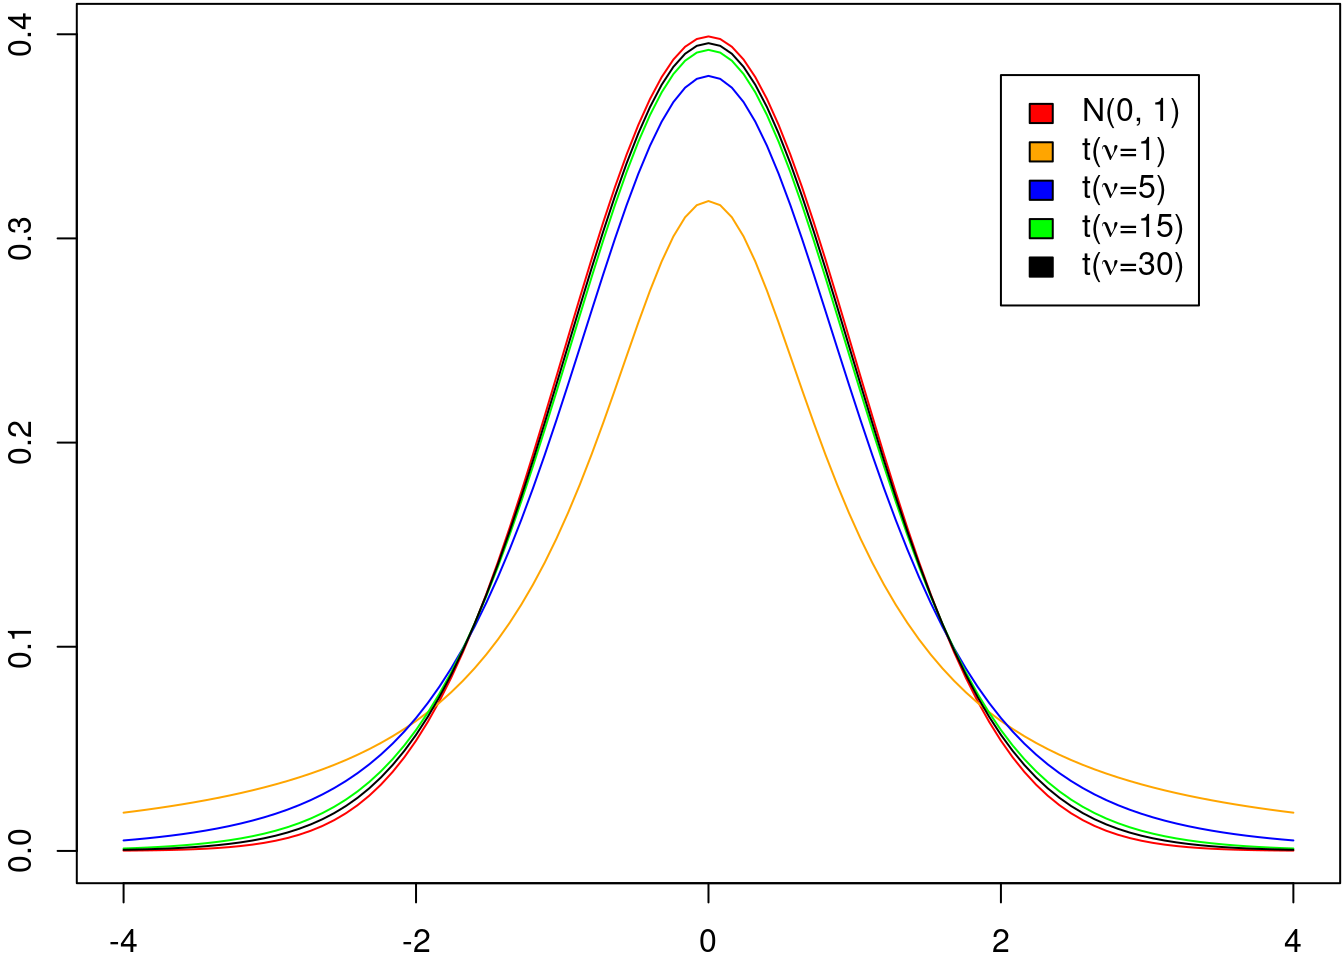 Gráficos da densidade de probabilidade para a distribuição normal padrão (vermelho) e da distribuição t de Student com graus de liberdade iguais a 1, 5, 15 e 30, respectivamente.